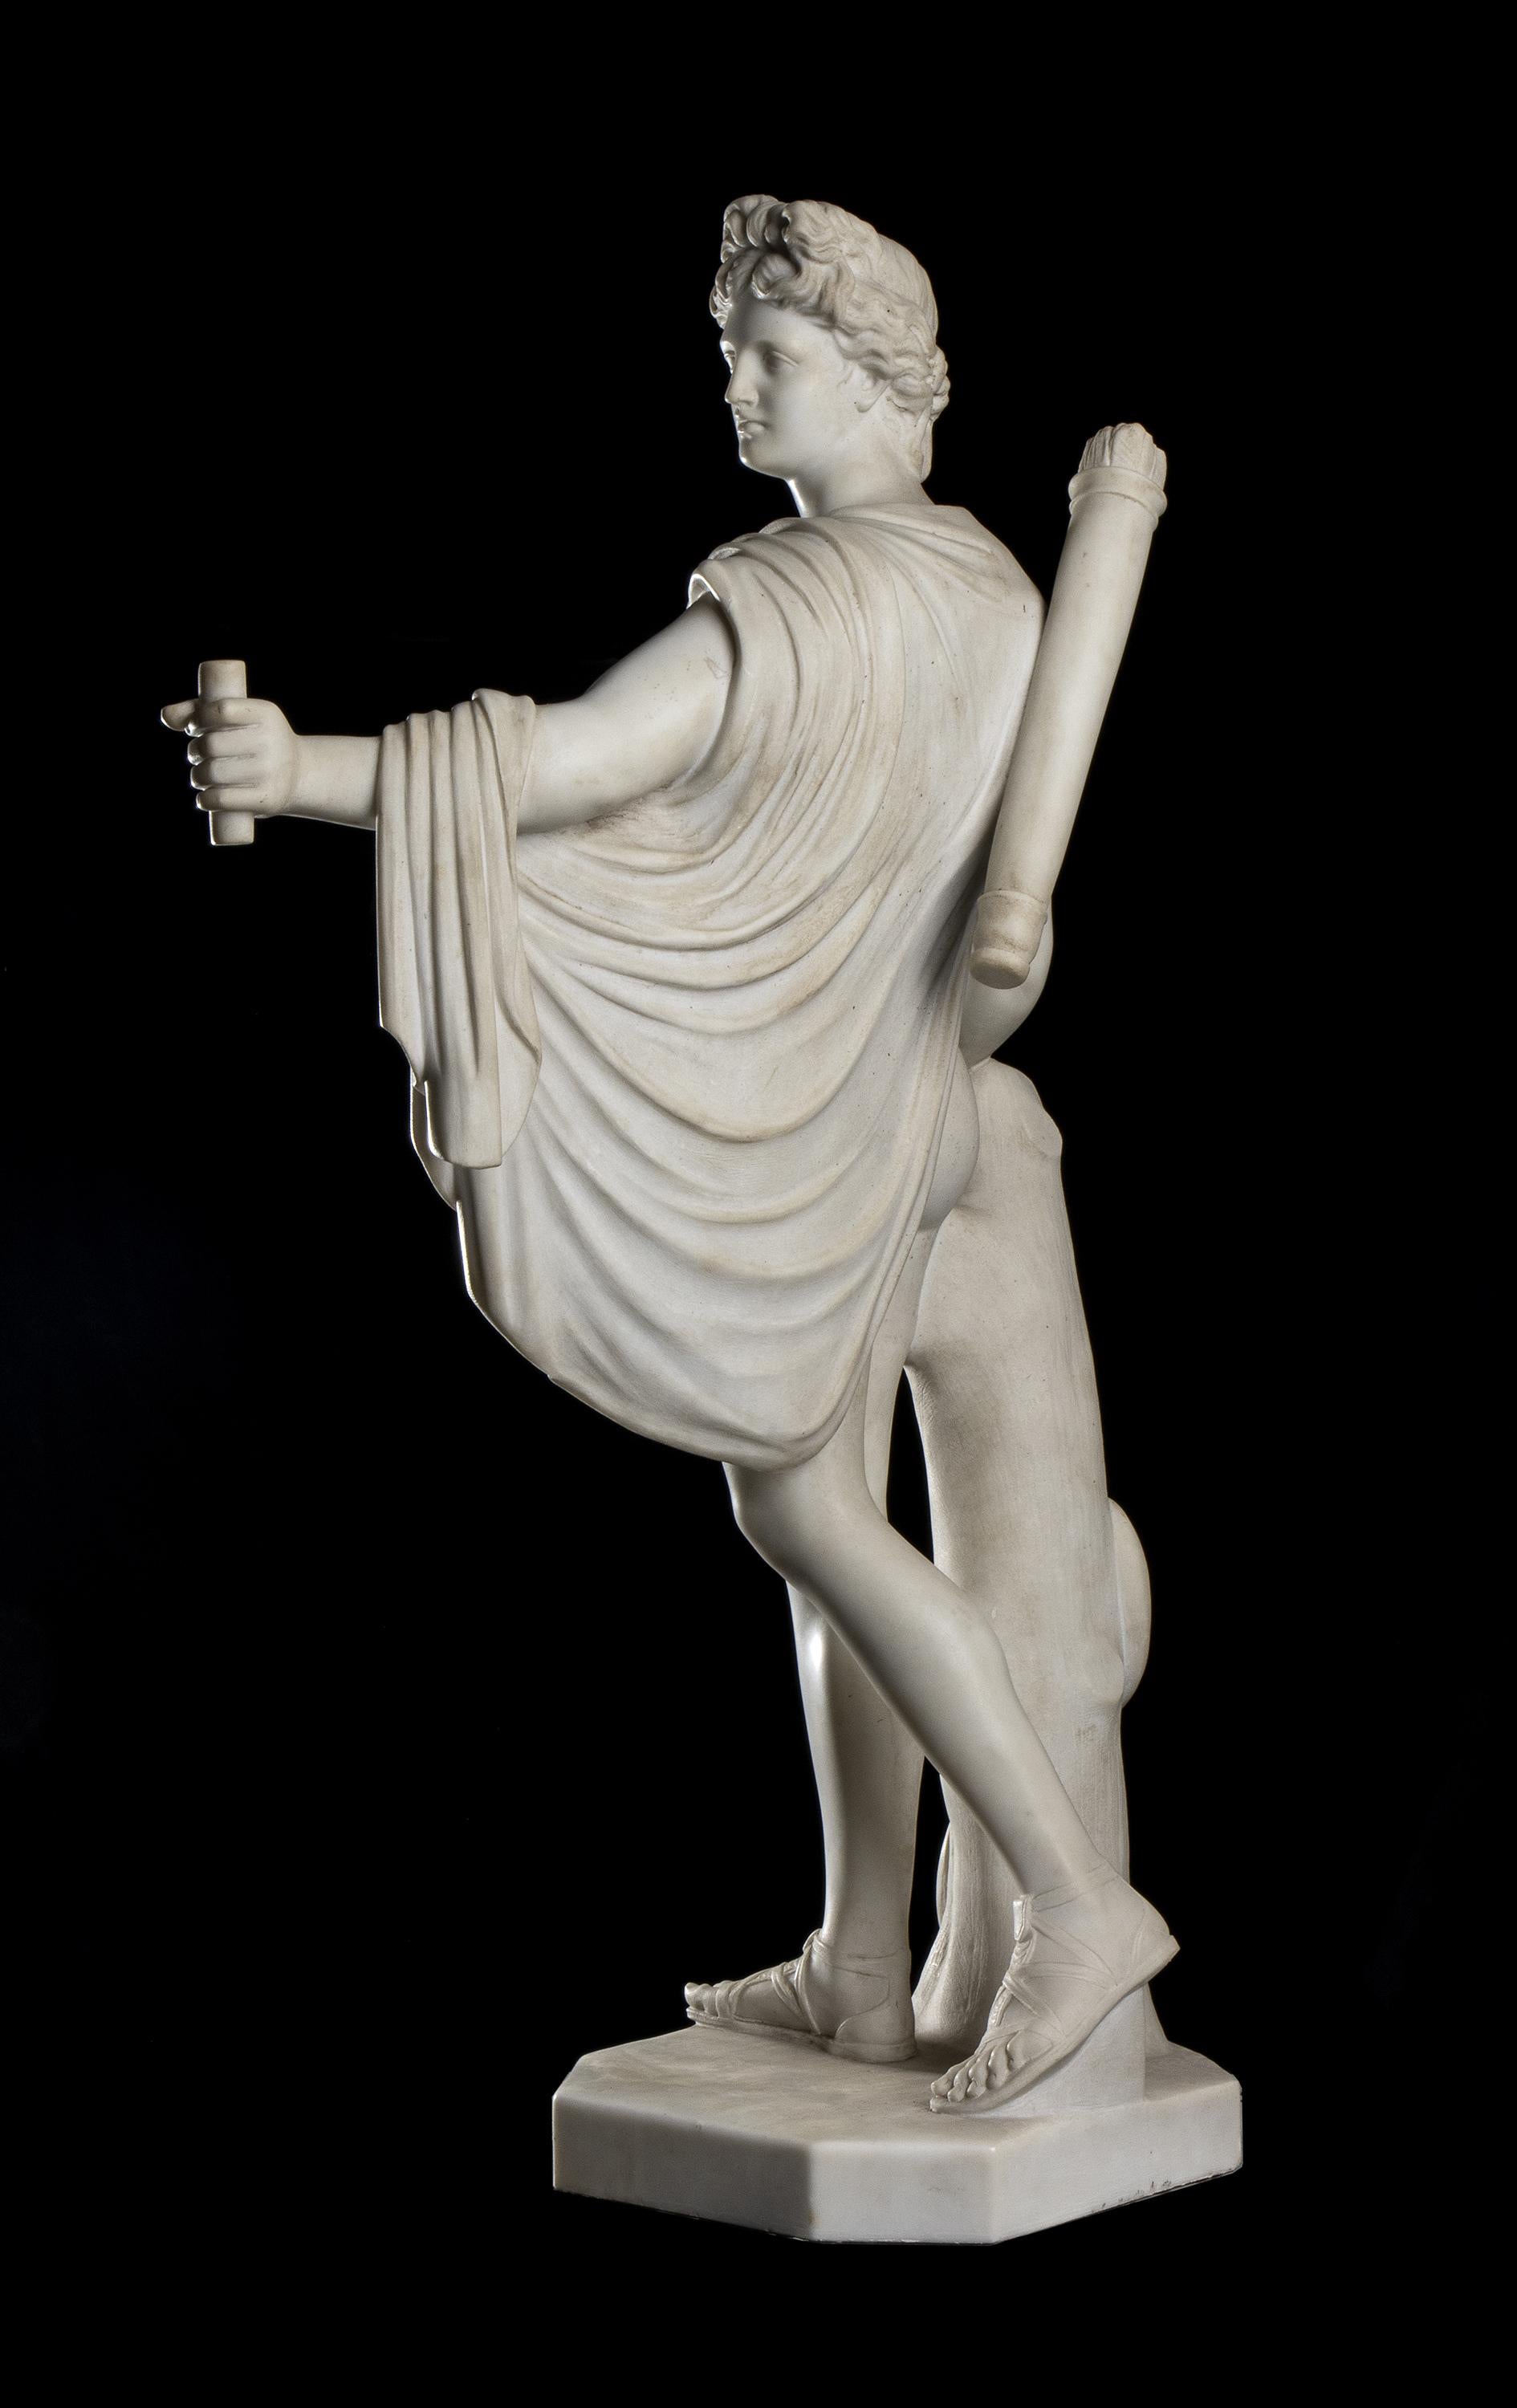  White Statuary Marble Sculpture Apollo Belvedere 19th Classical Grand Tour  5